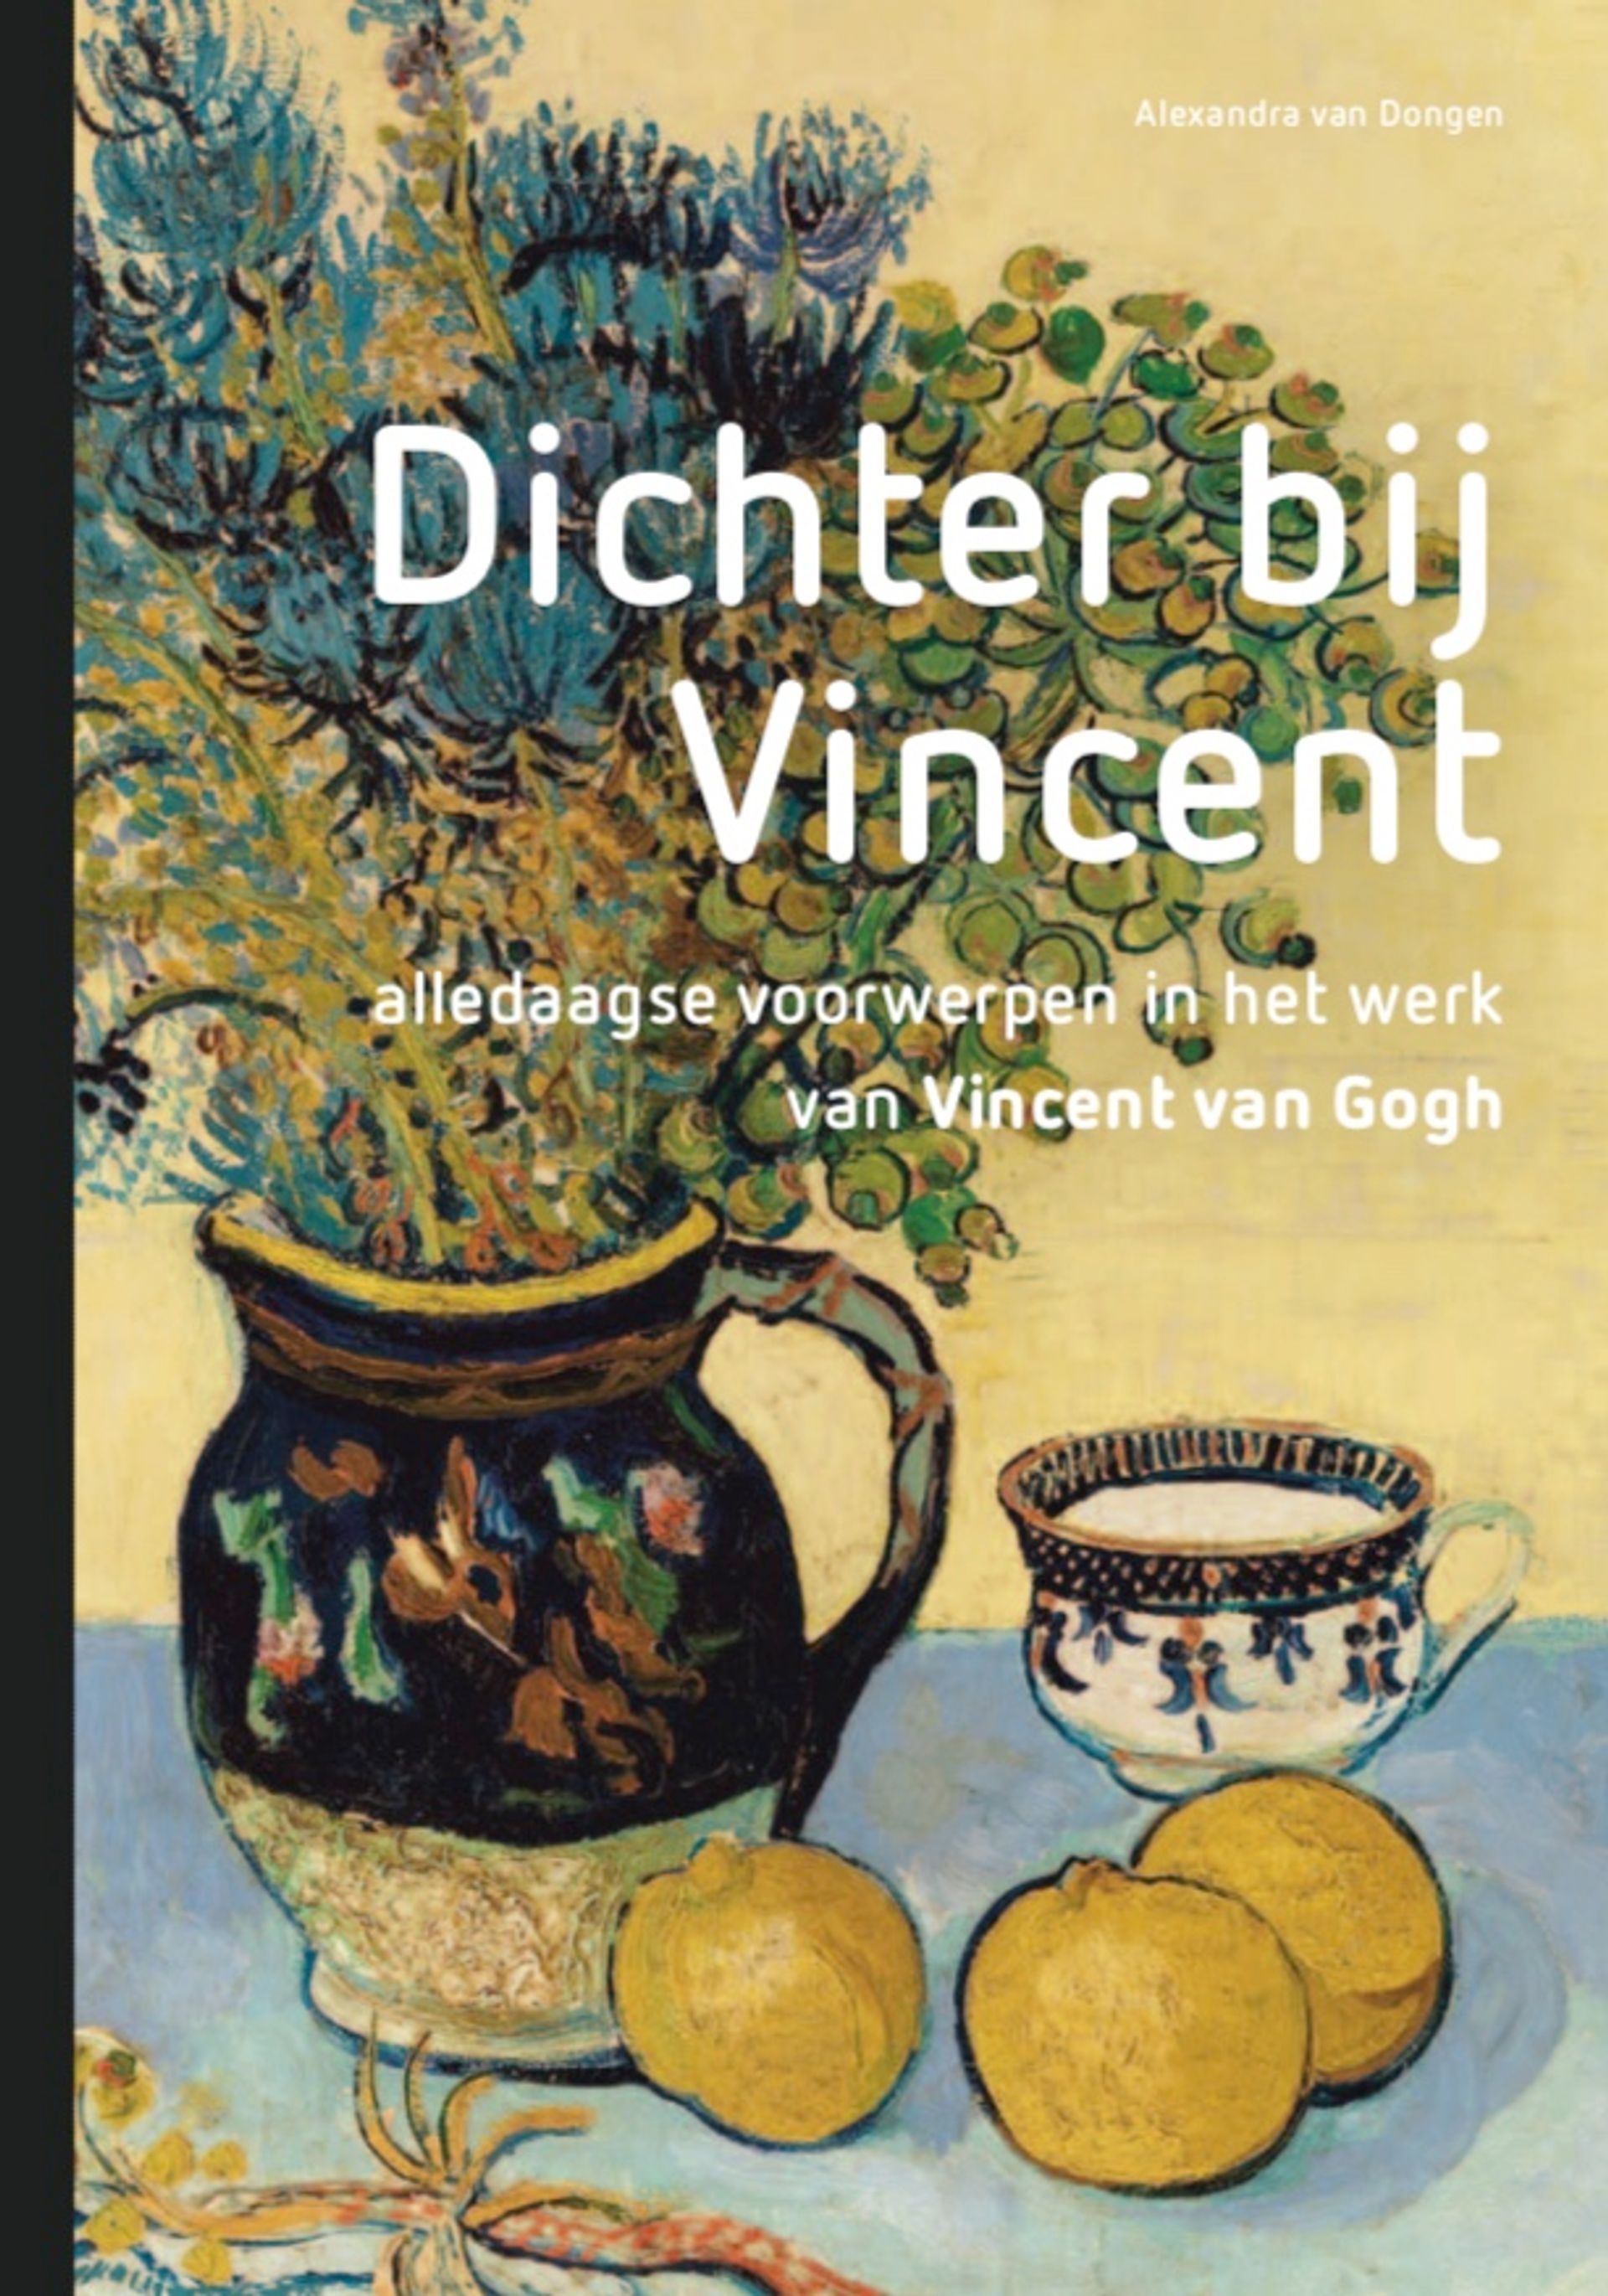 展览同名出版物《走近文森特：文森特·梵高作品中的日常物品》亚历山德拉·范·东根（Alexandra van Dongen）著